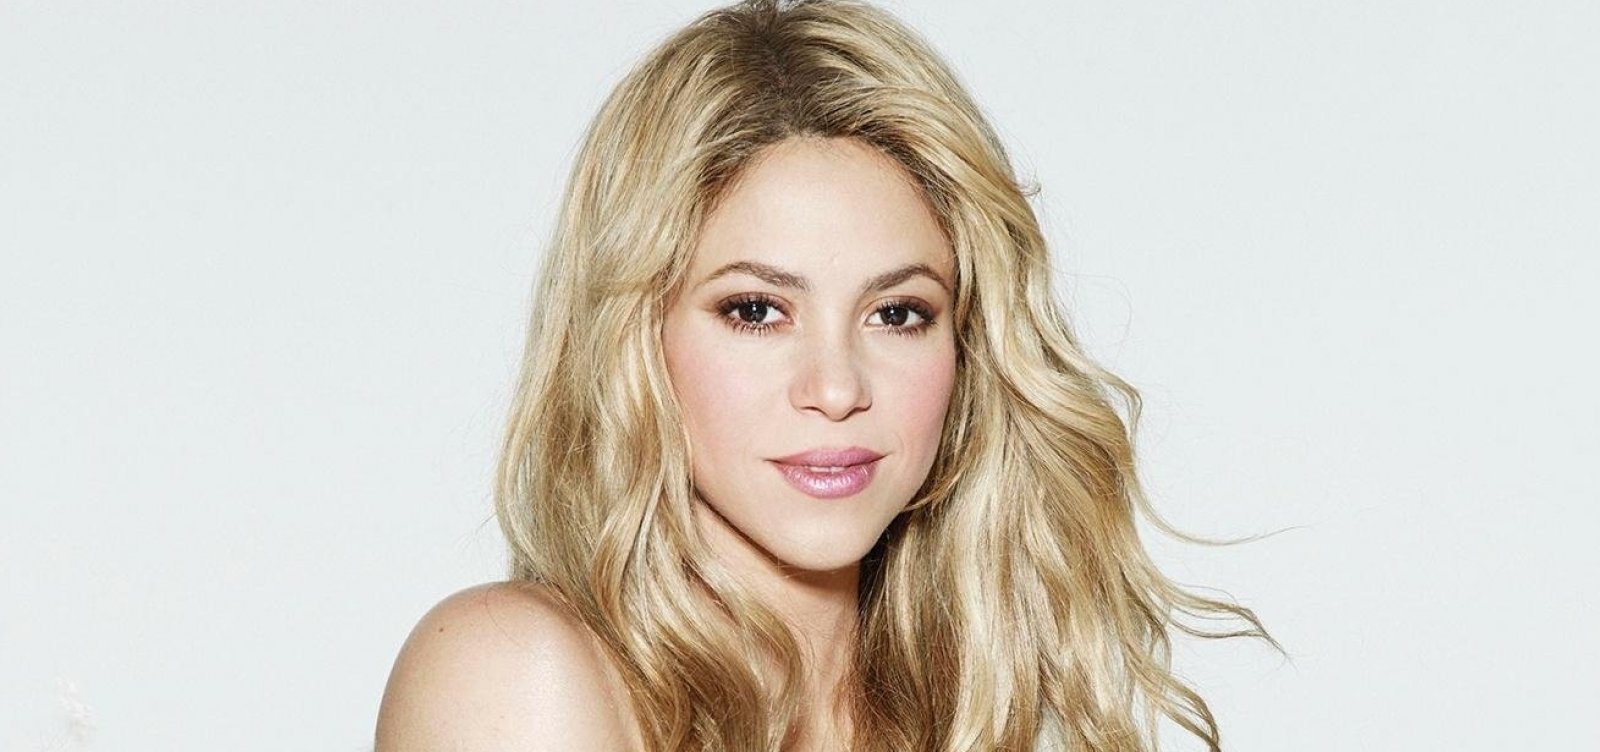 Ministério Público espanhol pede mais de 8 anos de prisão para Shakira por fraude fiscal